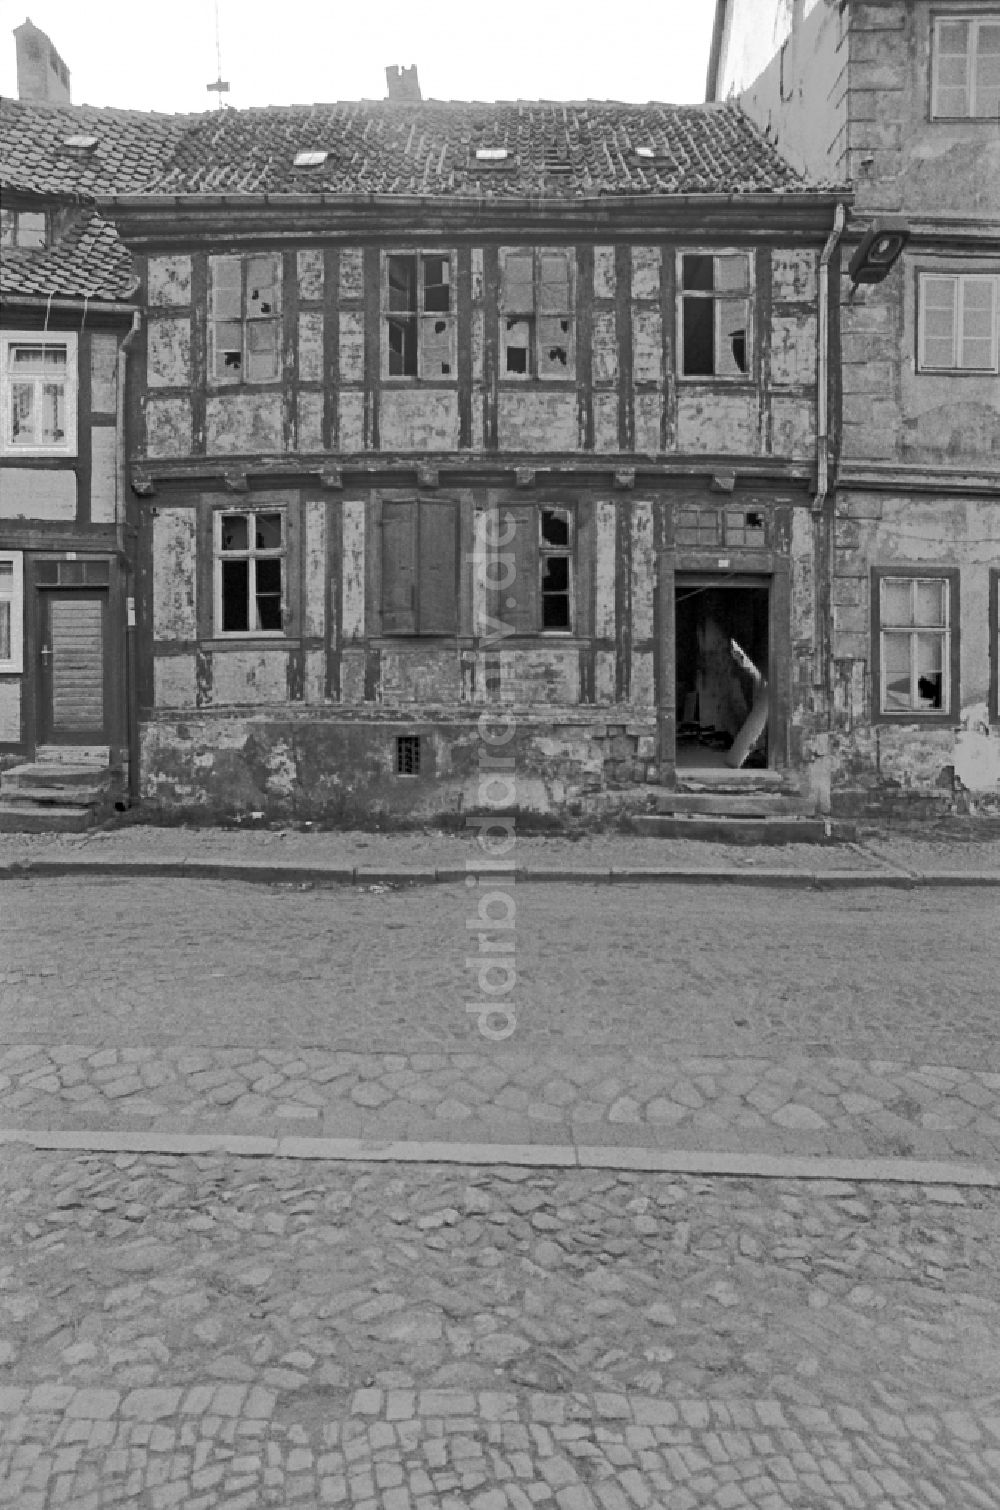 DDR-Bildarchiv: Quedlinburg - Ruine eines Fachwerkbaus in Quedlinburg in der DDR